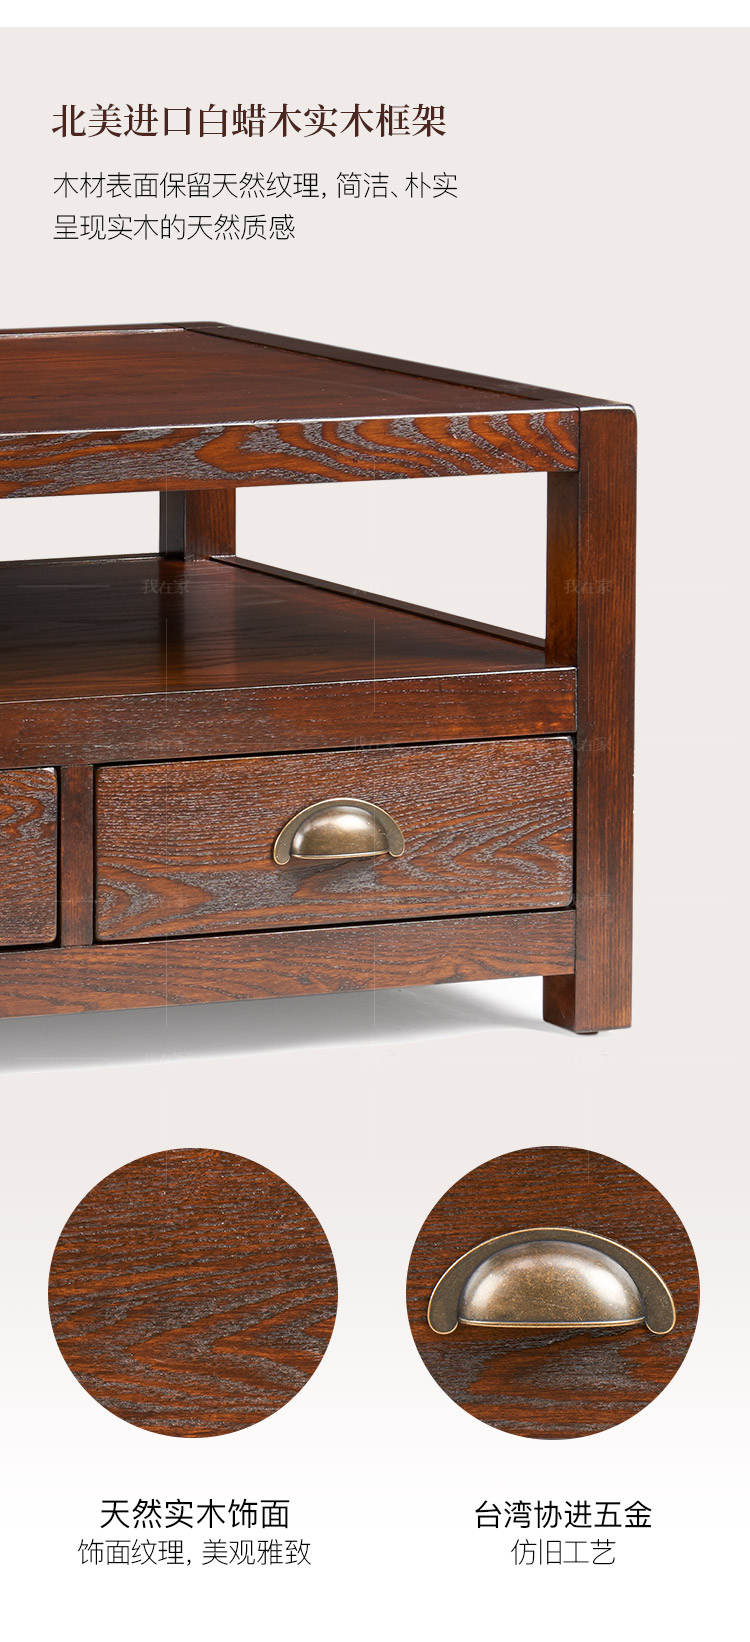 简约美式风格福克斯咖啡桌的家具详细介绍